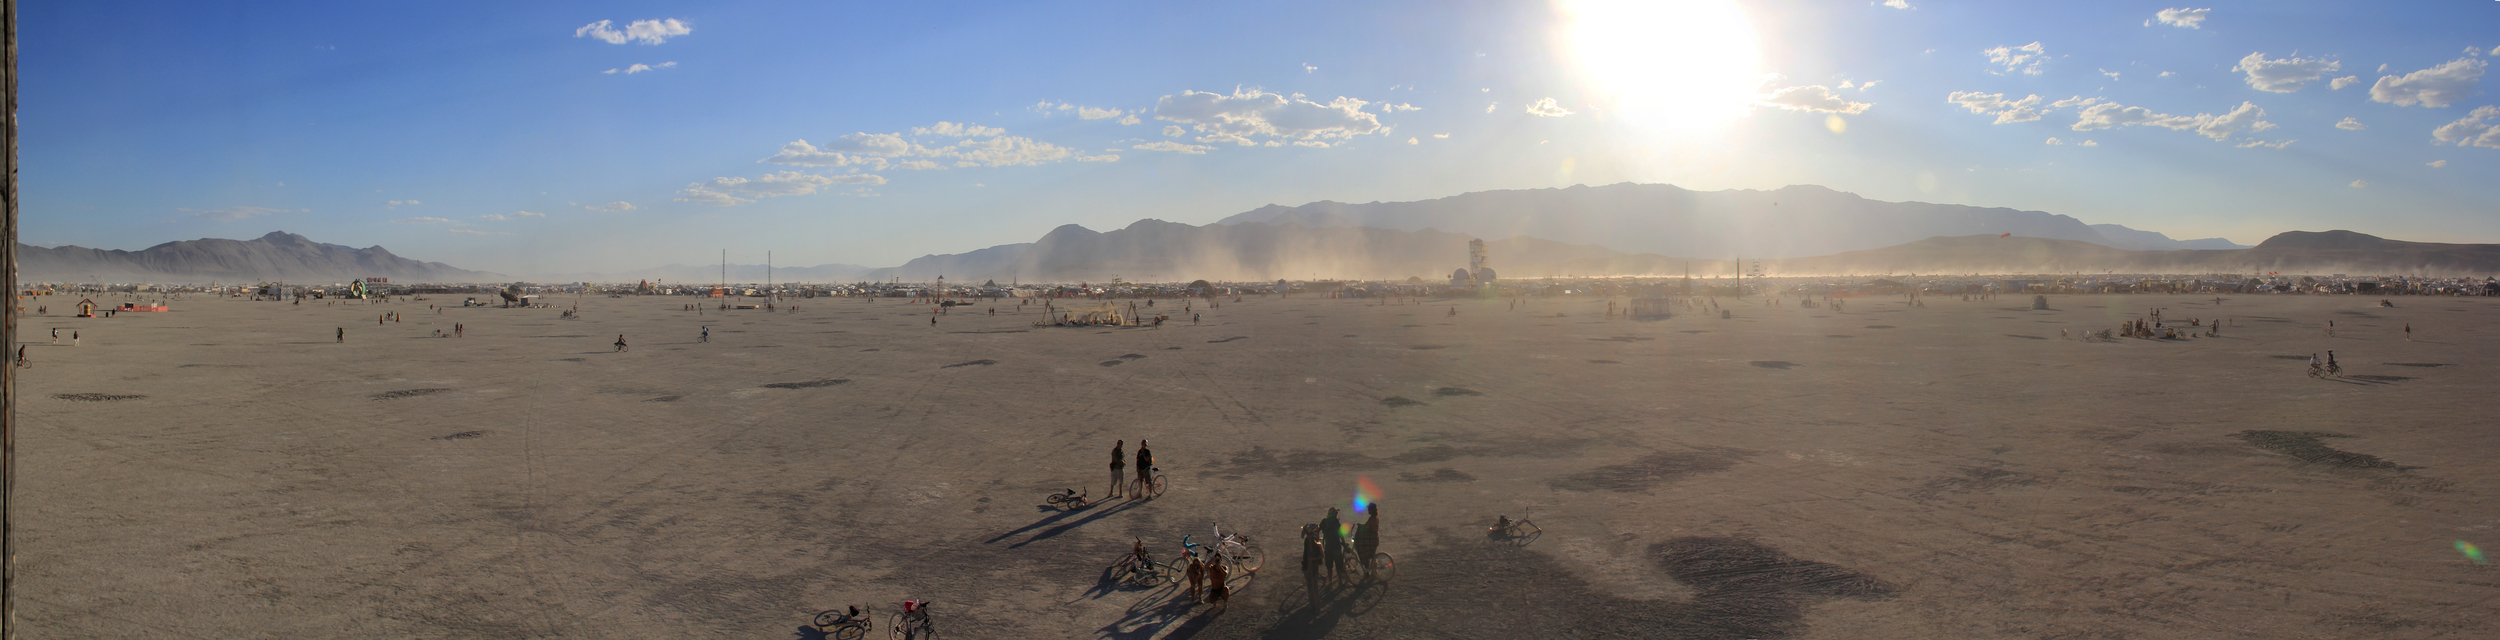 Playa View, Burning Man 2012